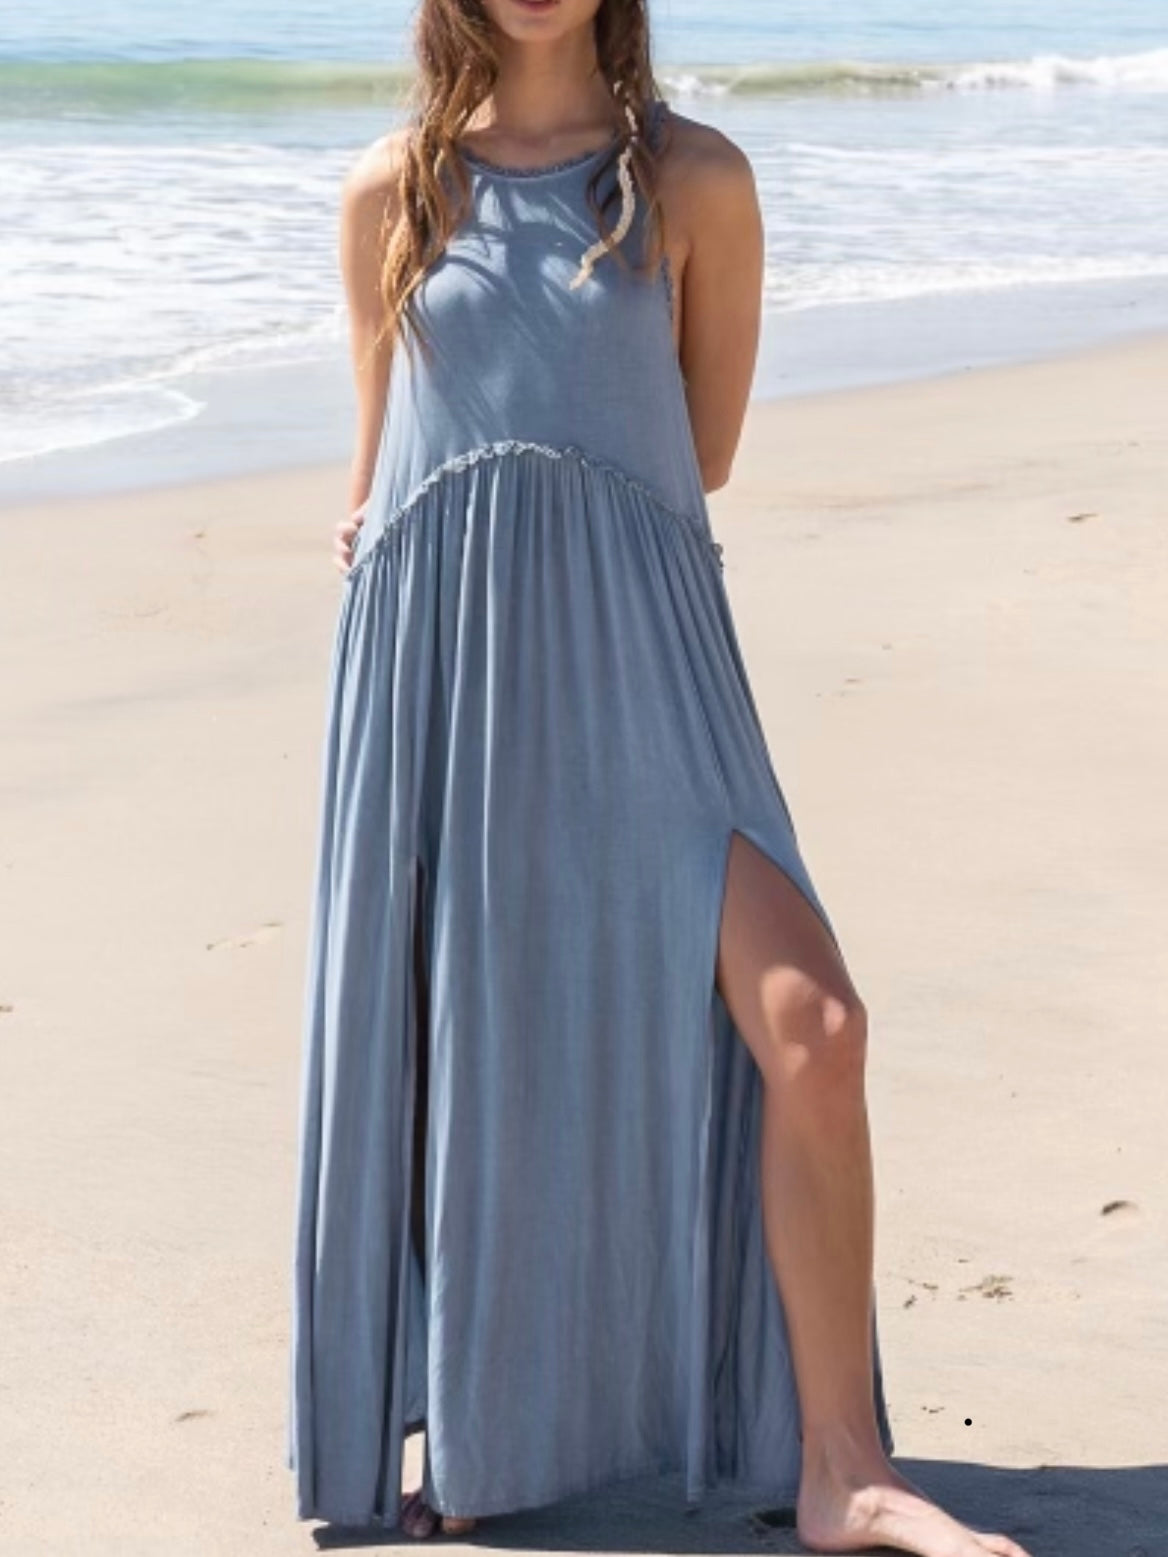 Light blue midi dress